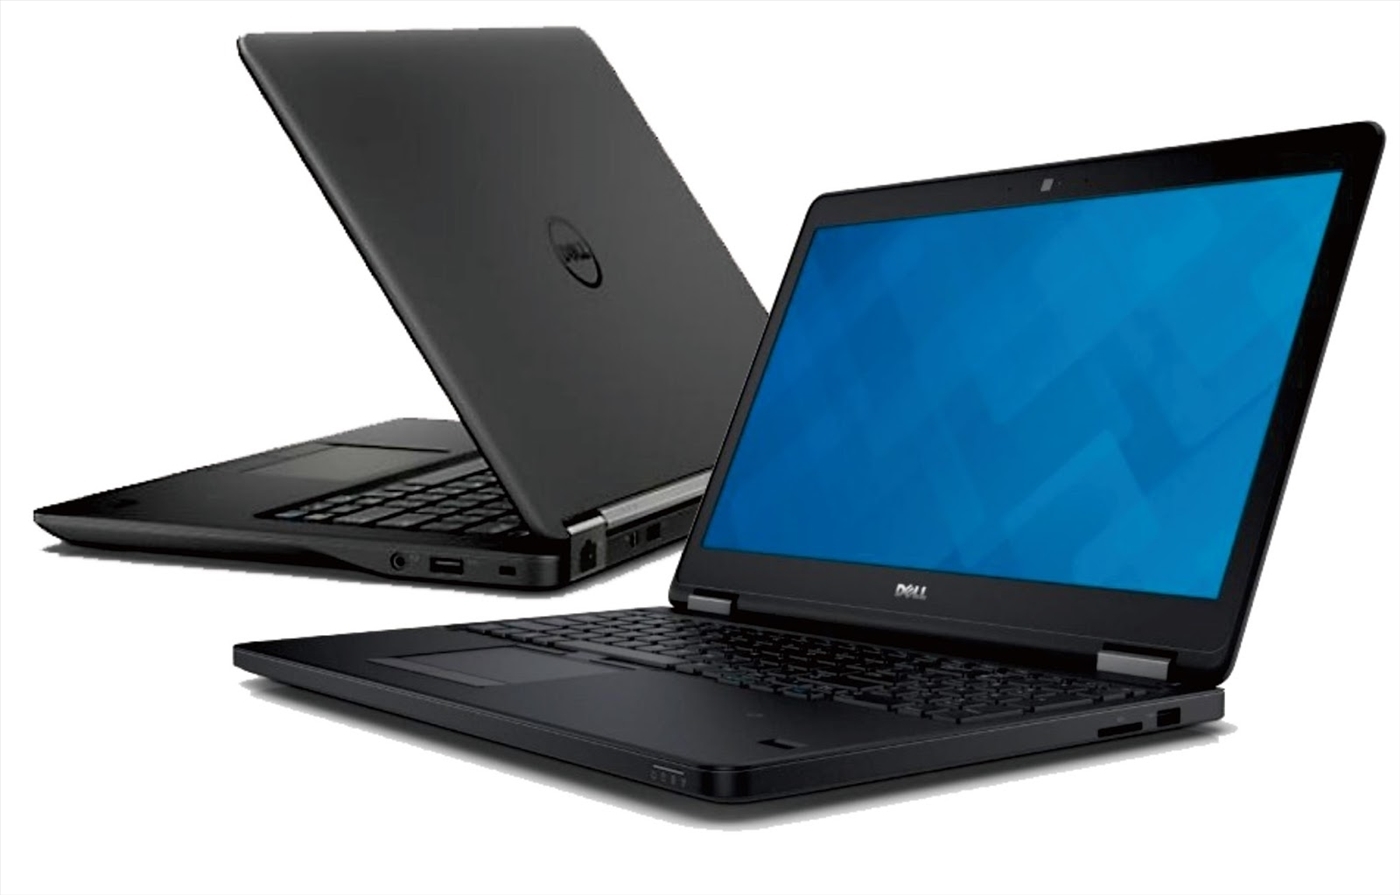 [Trả góp 0%]Laptop utrabook Dell Latitude E7450 Core i7-5600U/ 8G/ SSD 256G/ màn 14 inch  nặng 1.5kg